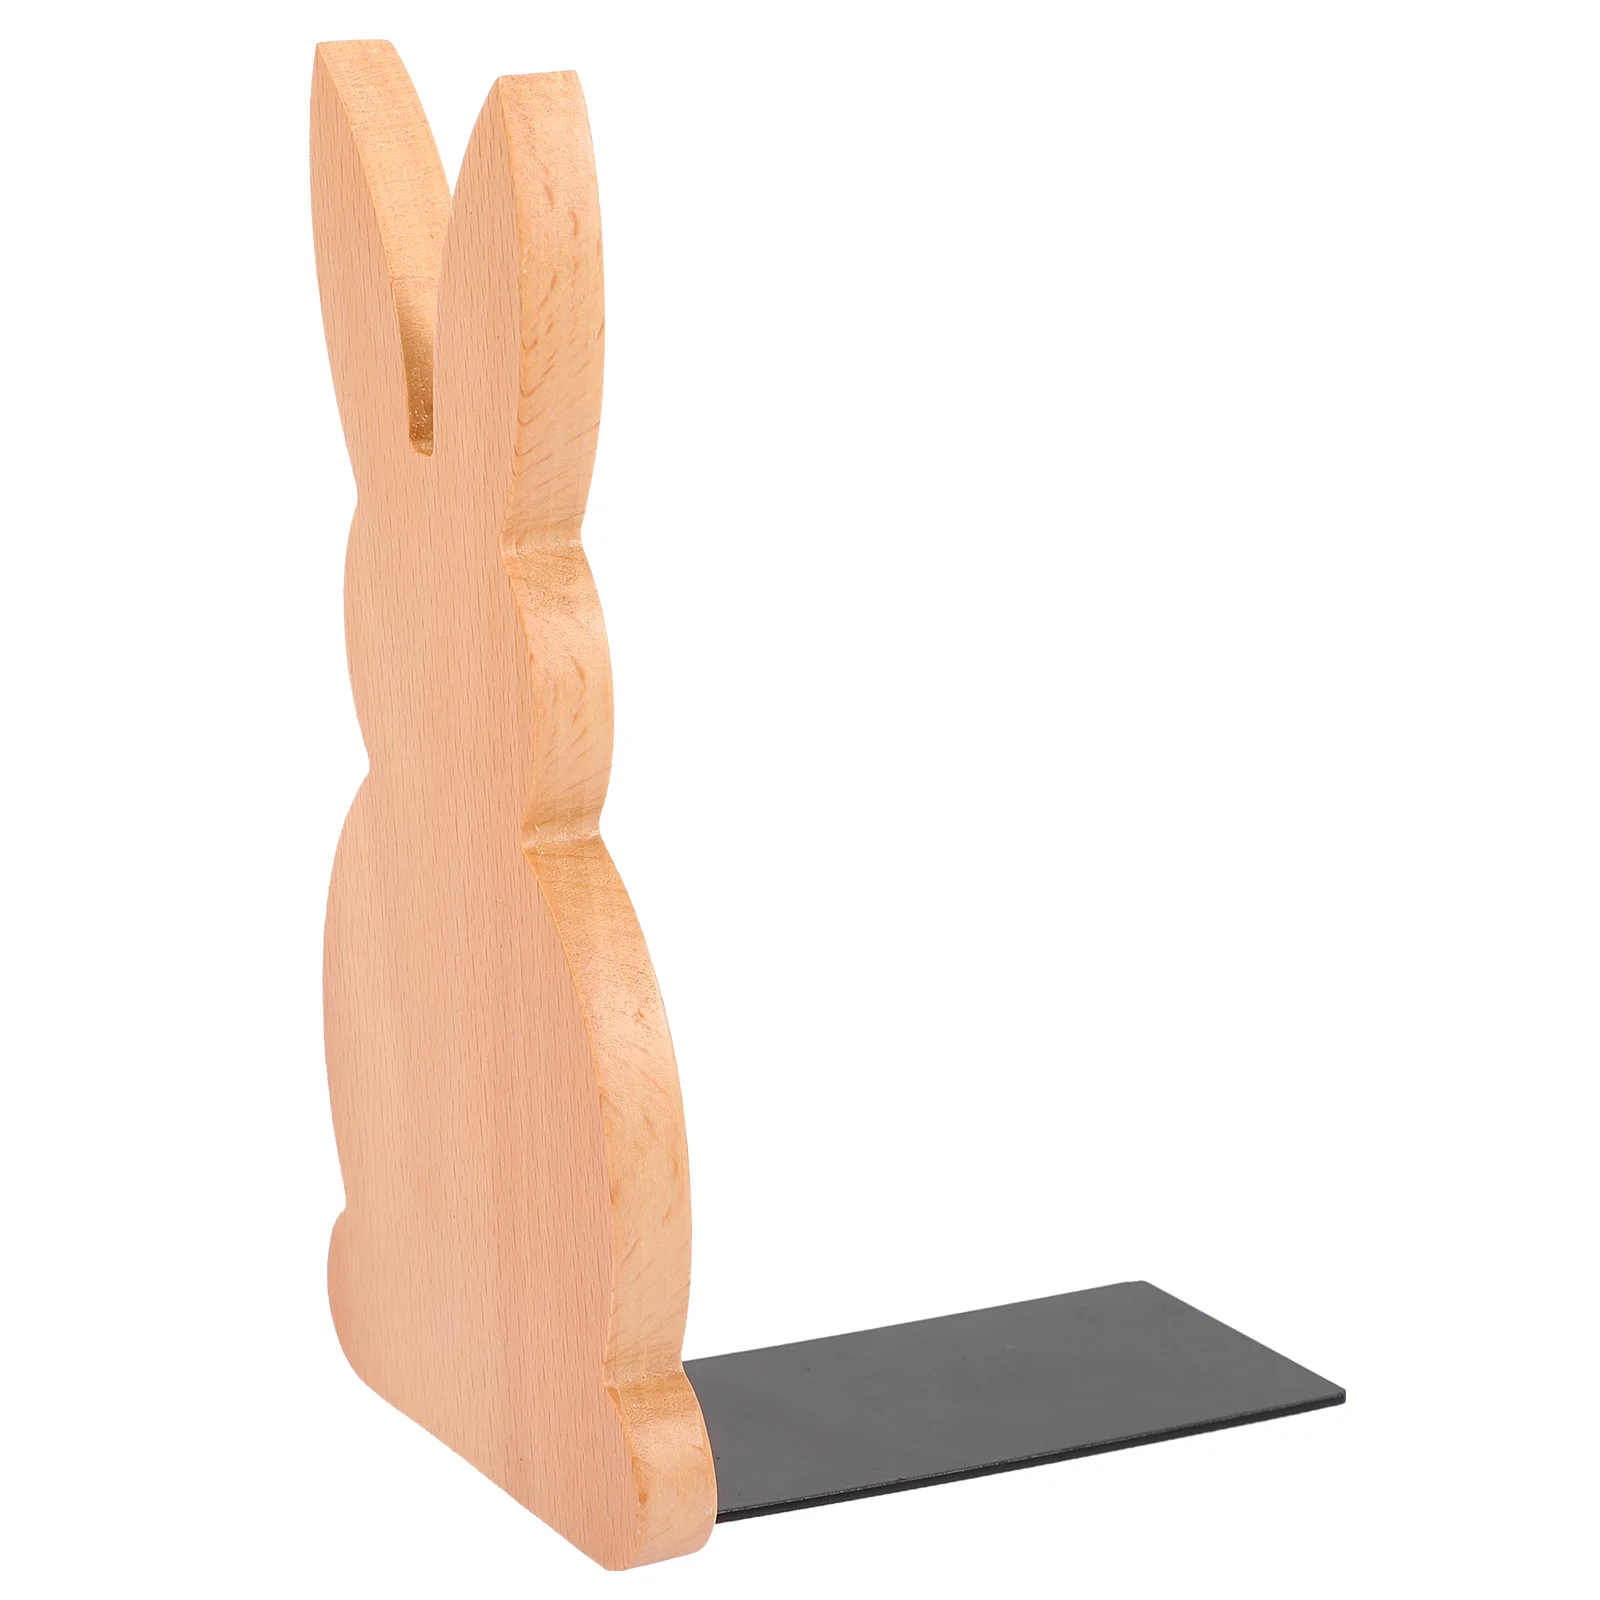 

Book Bookends File Ends Stand Rack Holder Desktop Wood Decorative Storage Easter Organizer Bunny Shelves Heavy Divider Decor